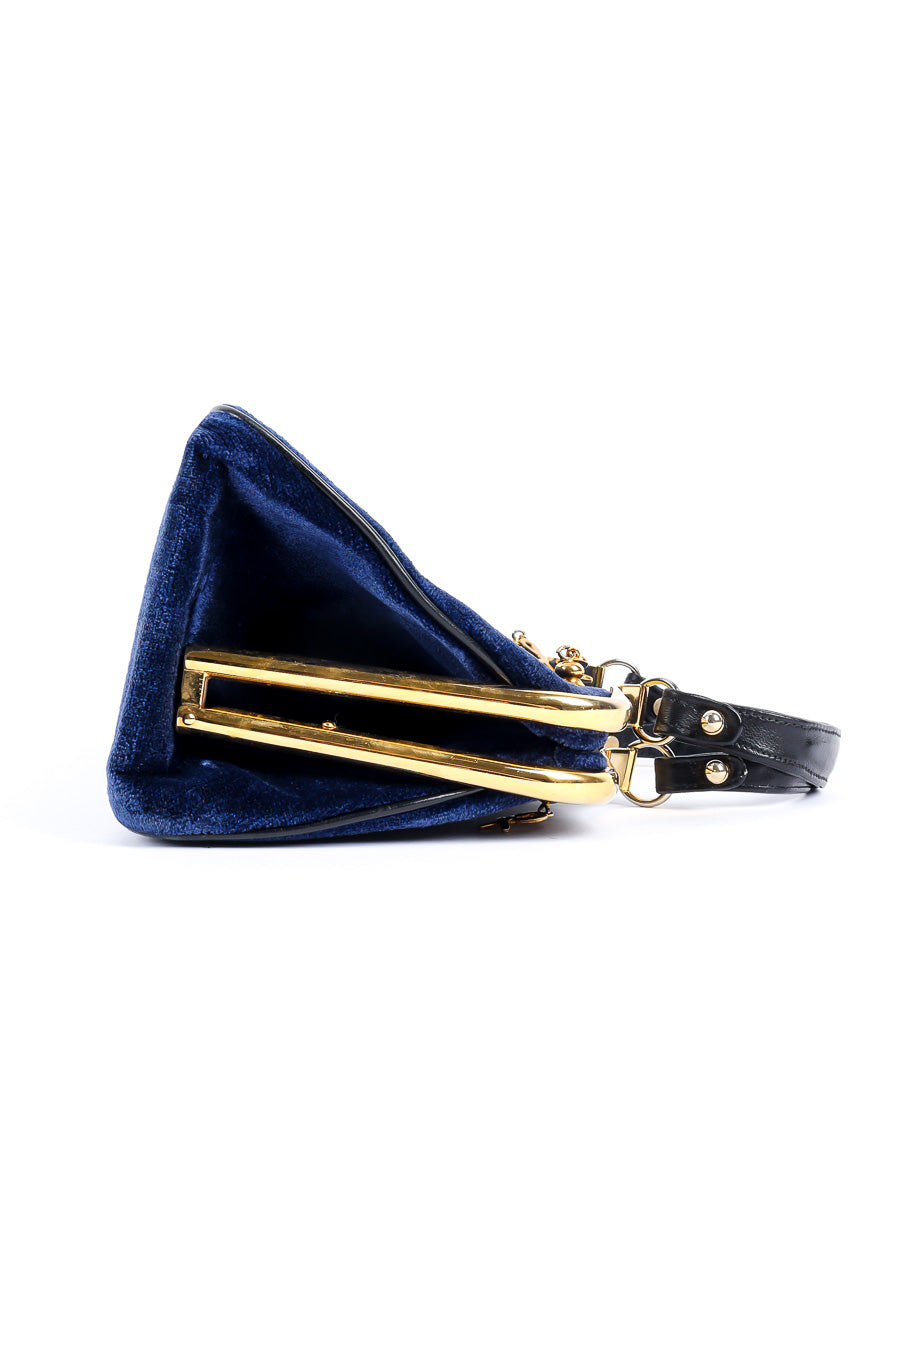 Roberta Di Camerino velvet stripe frame bag product shot @recessla